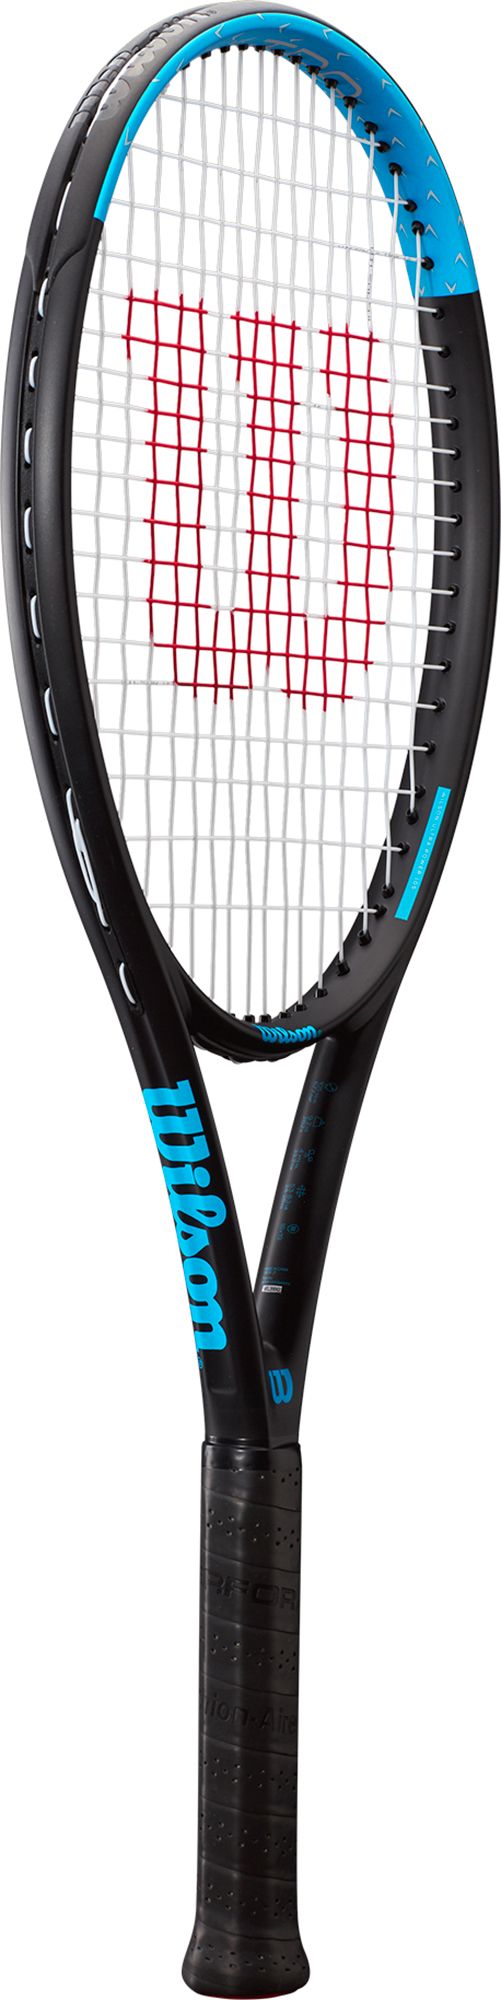 Wilson Ultra Power 105 Tennis Racquet Dicks Sporting Goods